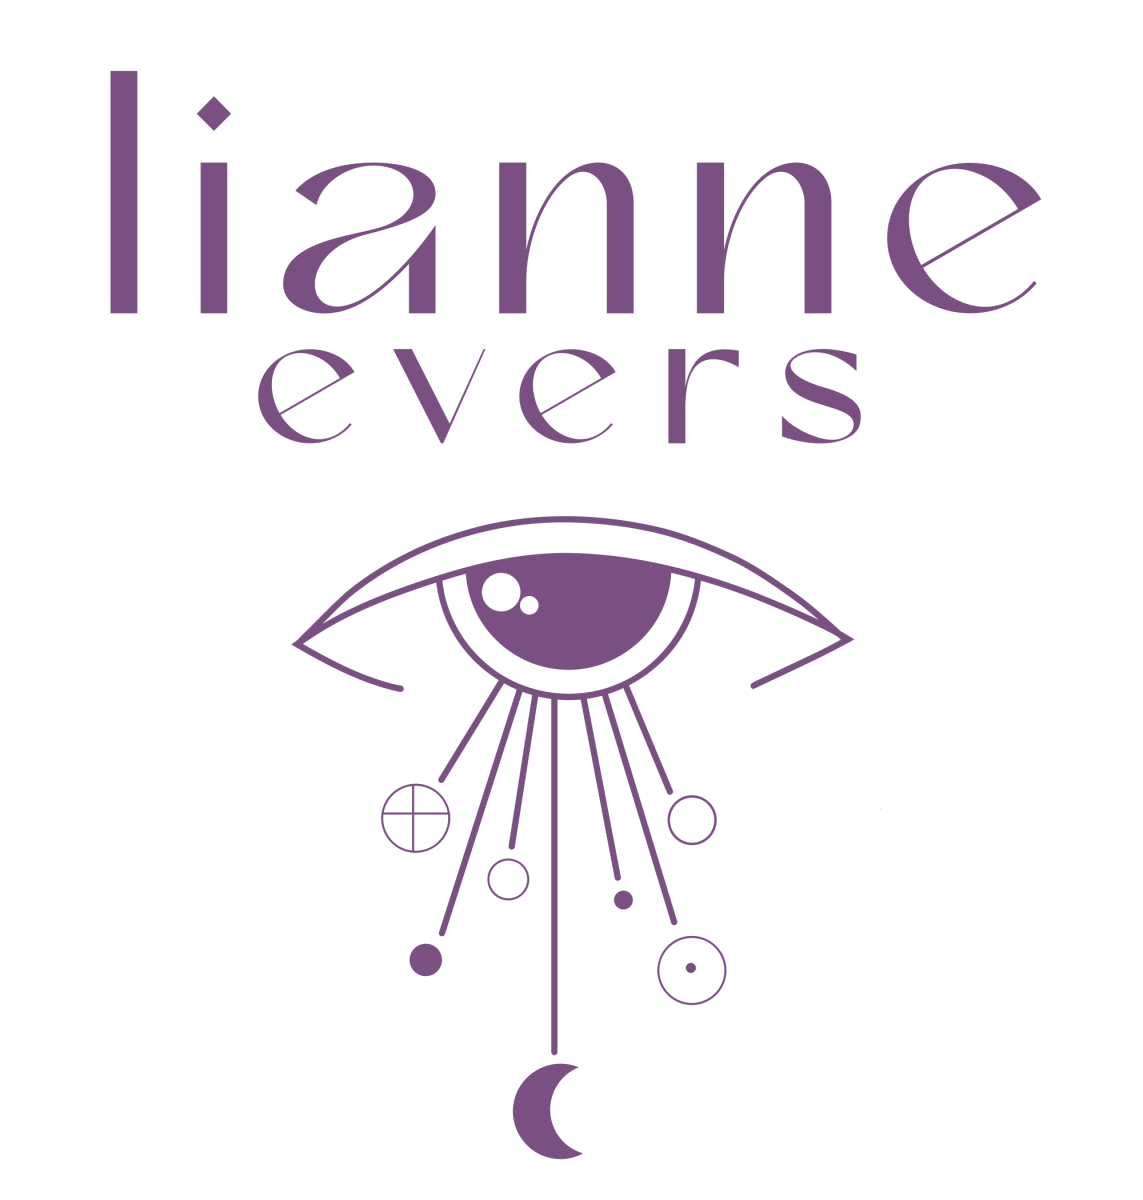 Lianne Evers